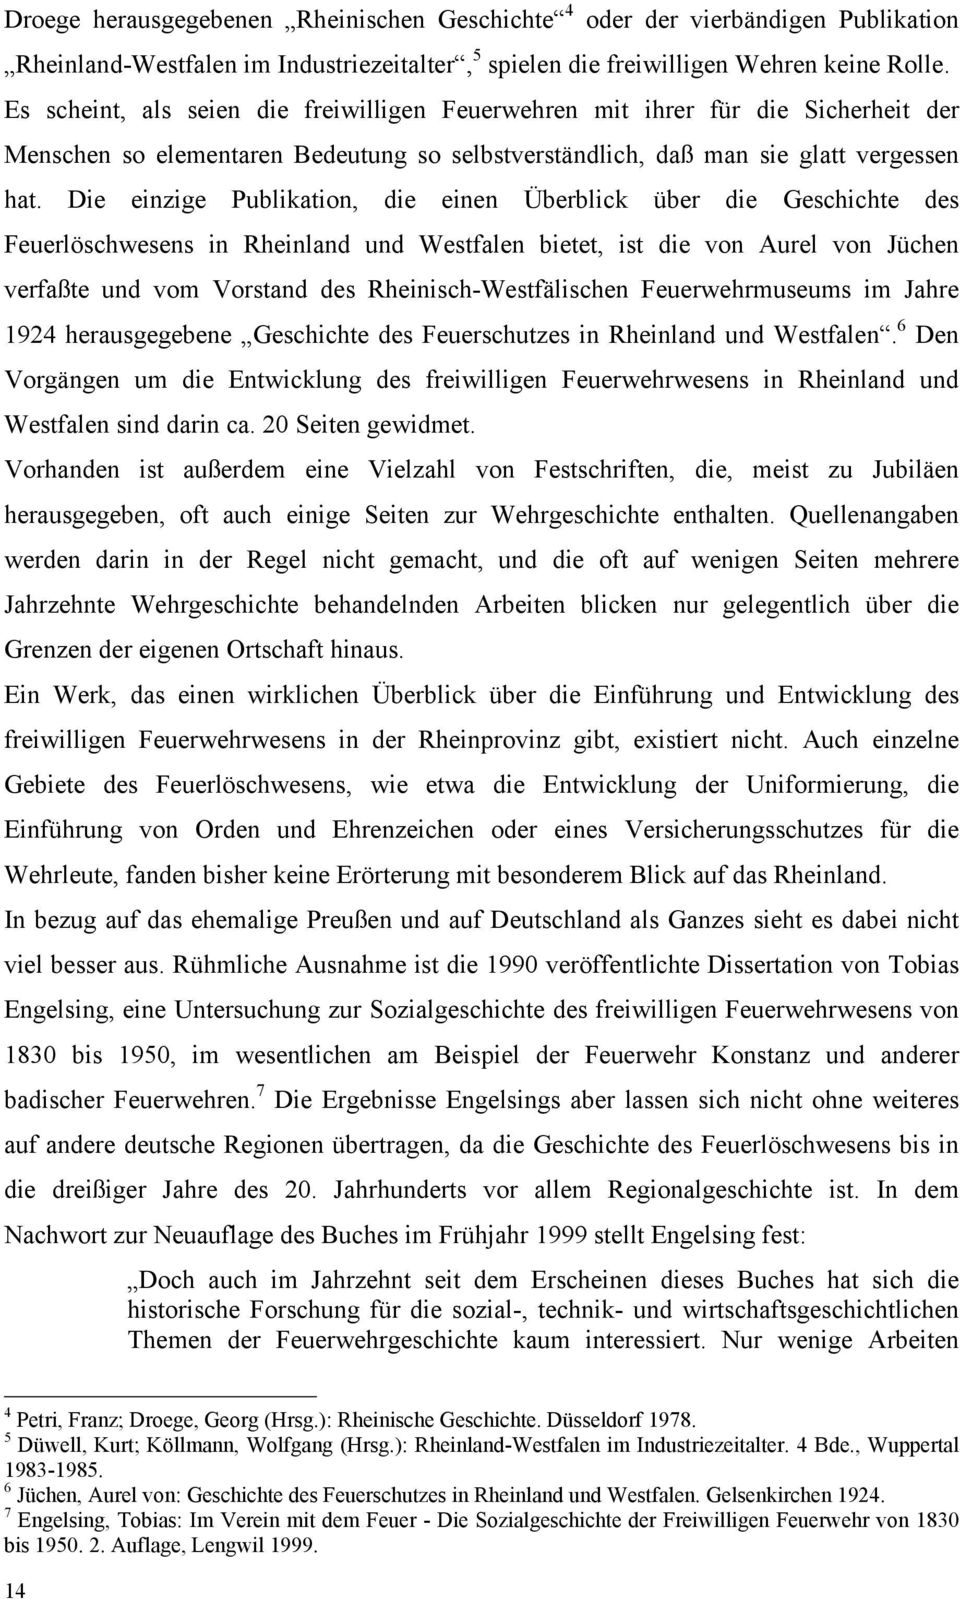 Die einzige Publikation, die einen Überblick über die Geschichte des Feuerlöschwesens in Rheinland und Westfalen bietet, ist die von Aurel von Jüchen verfaßte und vom Vorstand des